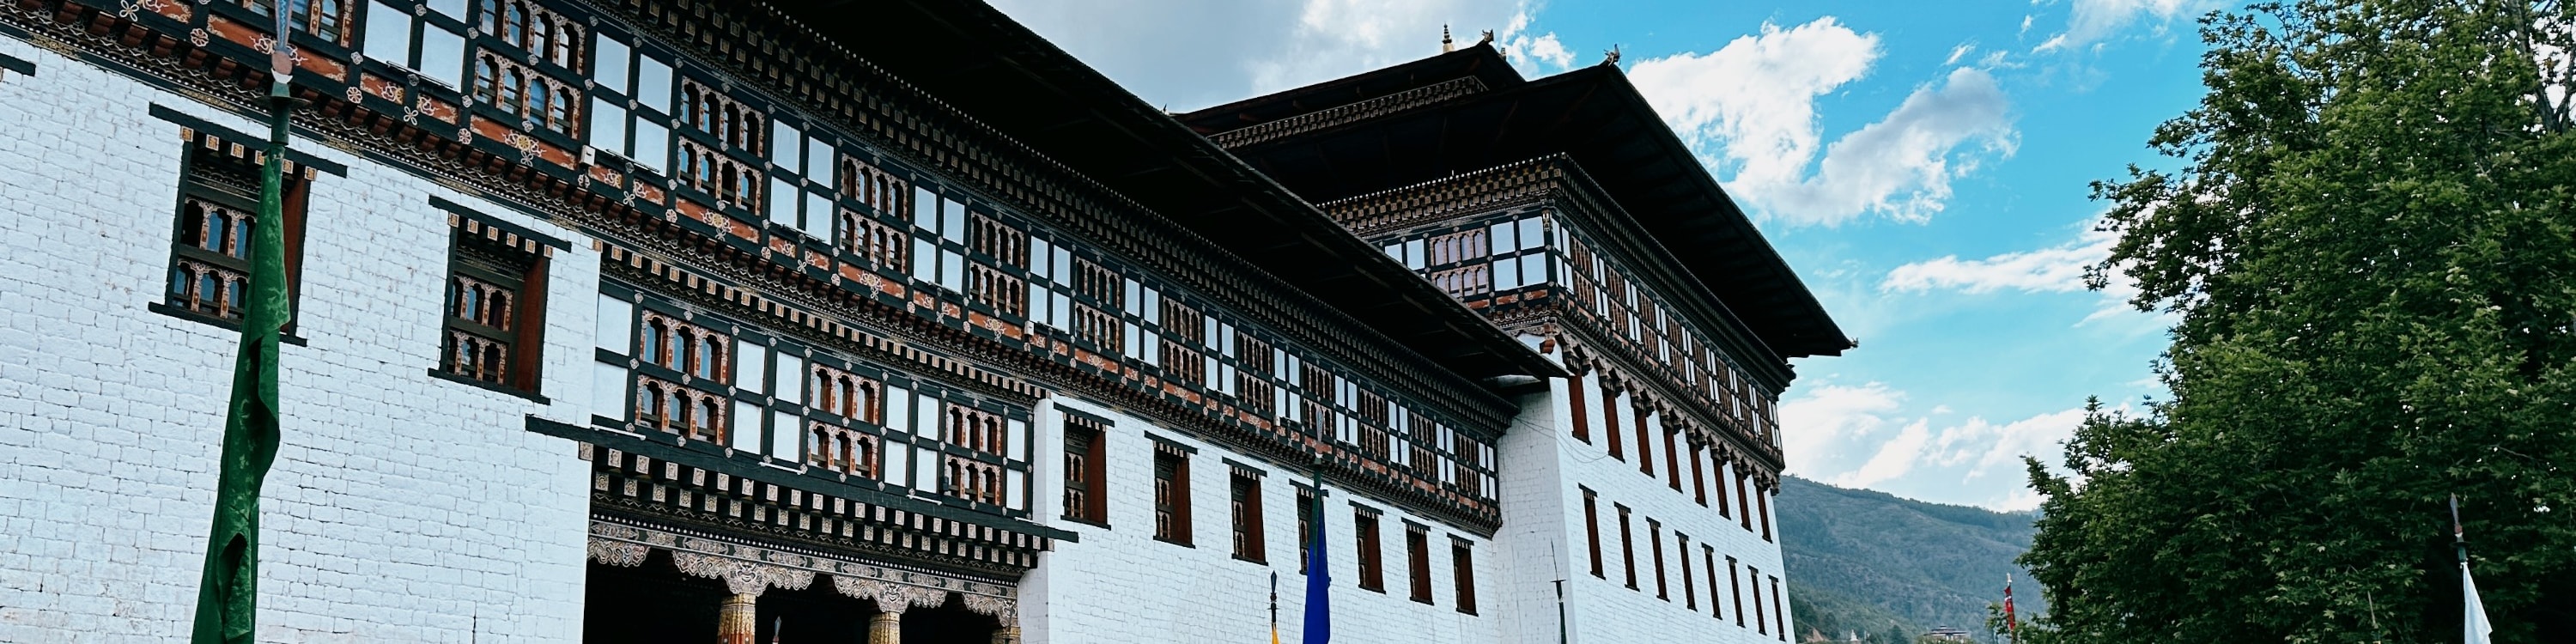 不丹5天4夜之旅